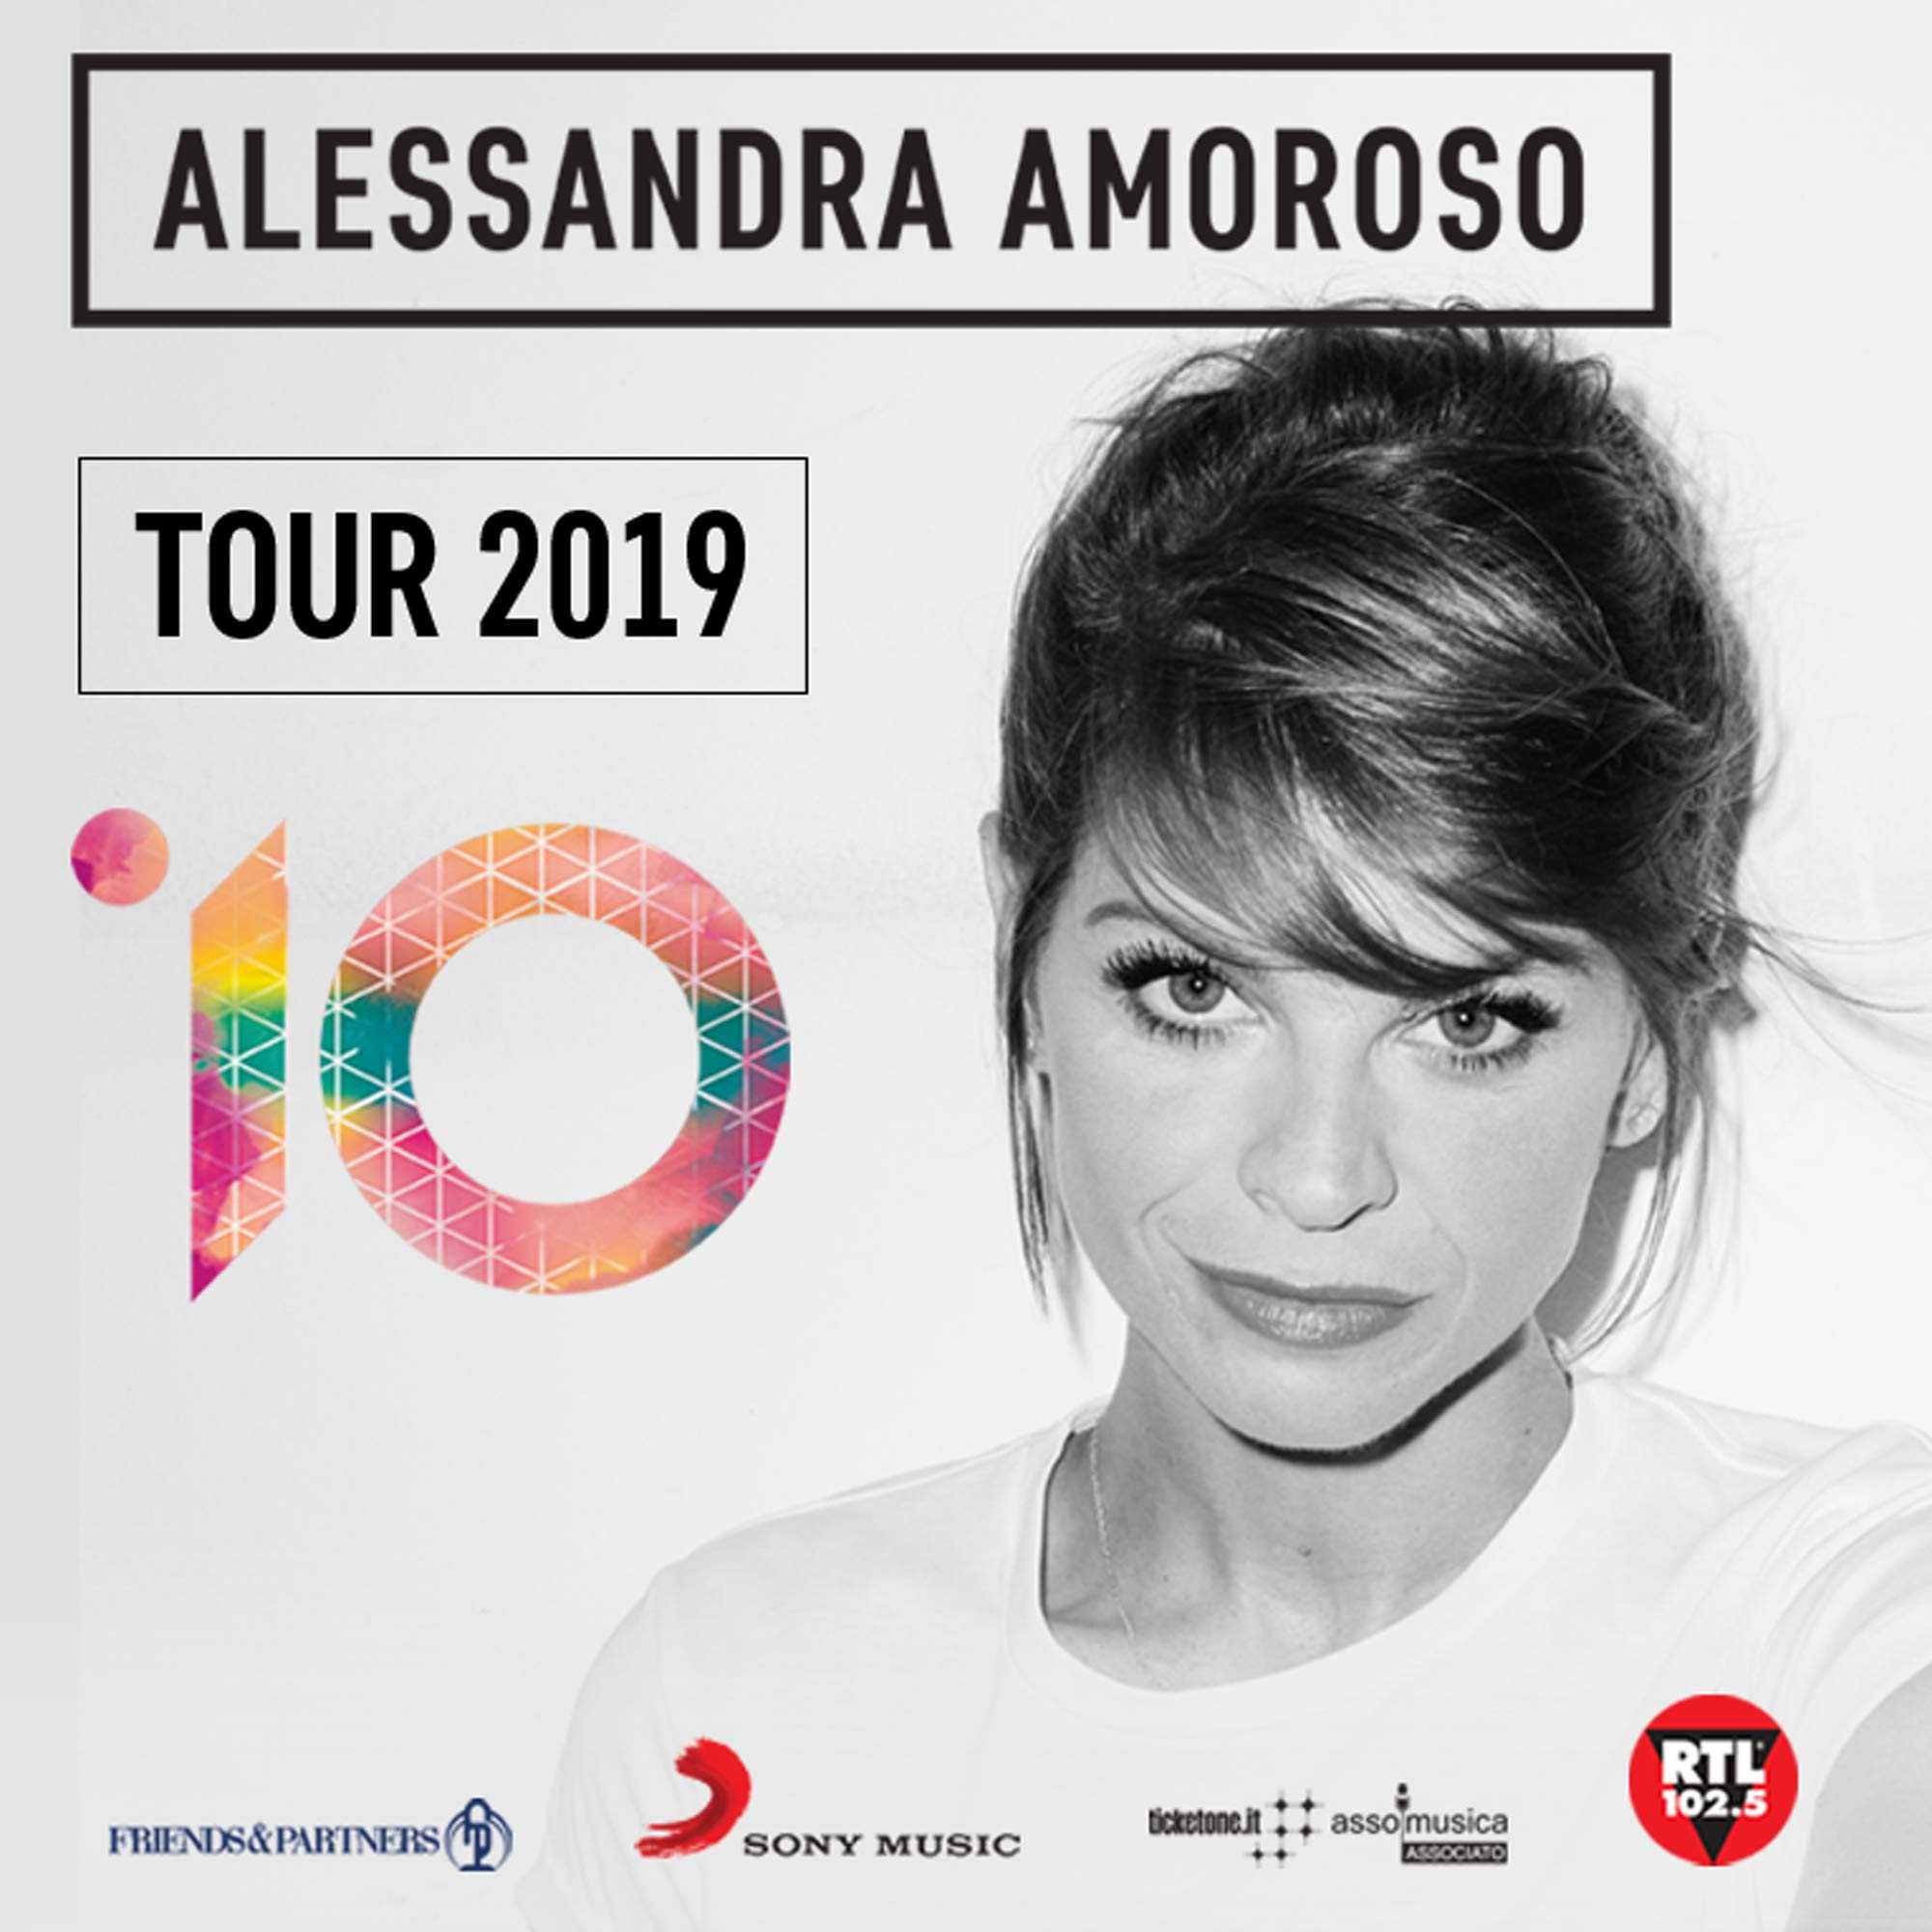 A Reggio Calabria arriva Alessandra Amoroso con il suo nuovo album di inediti “10